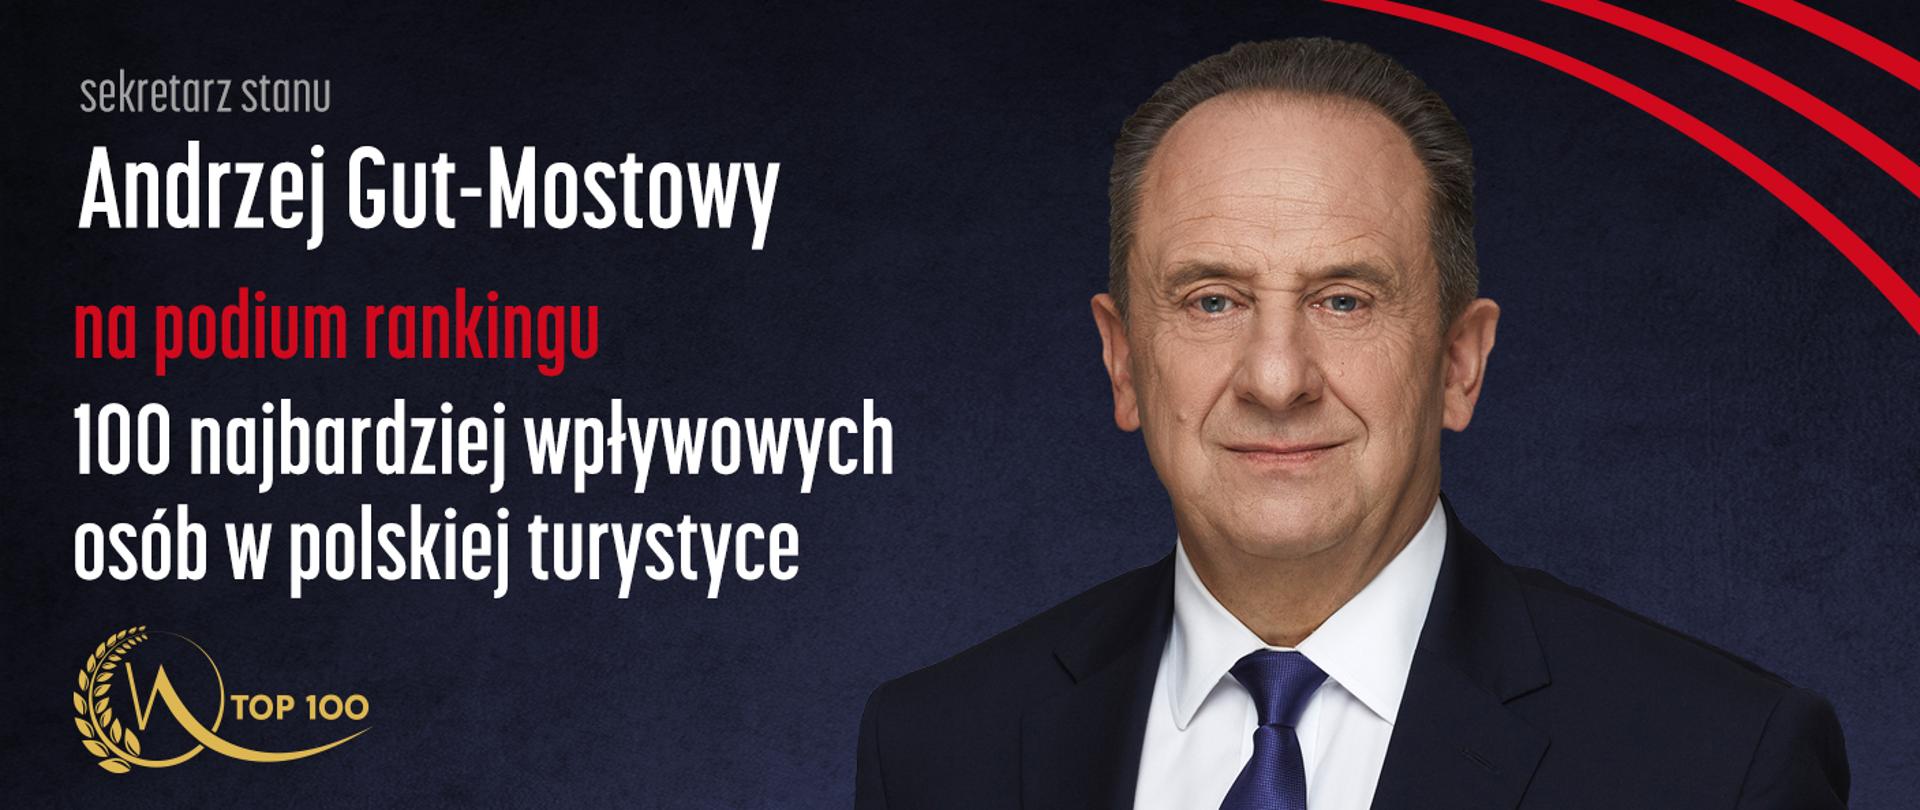 Sekretarz stanu Andrzej Gut-Mostowy na podium rankingu TOP 100 najbardziej wpływowych osób w polskiej turystyce